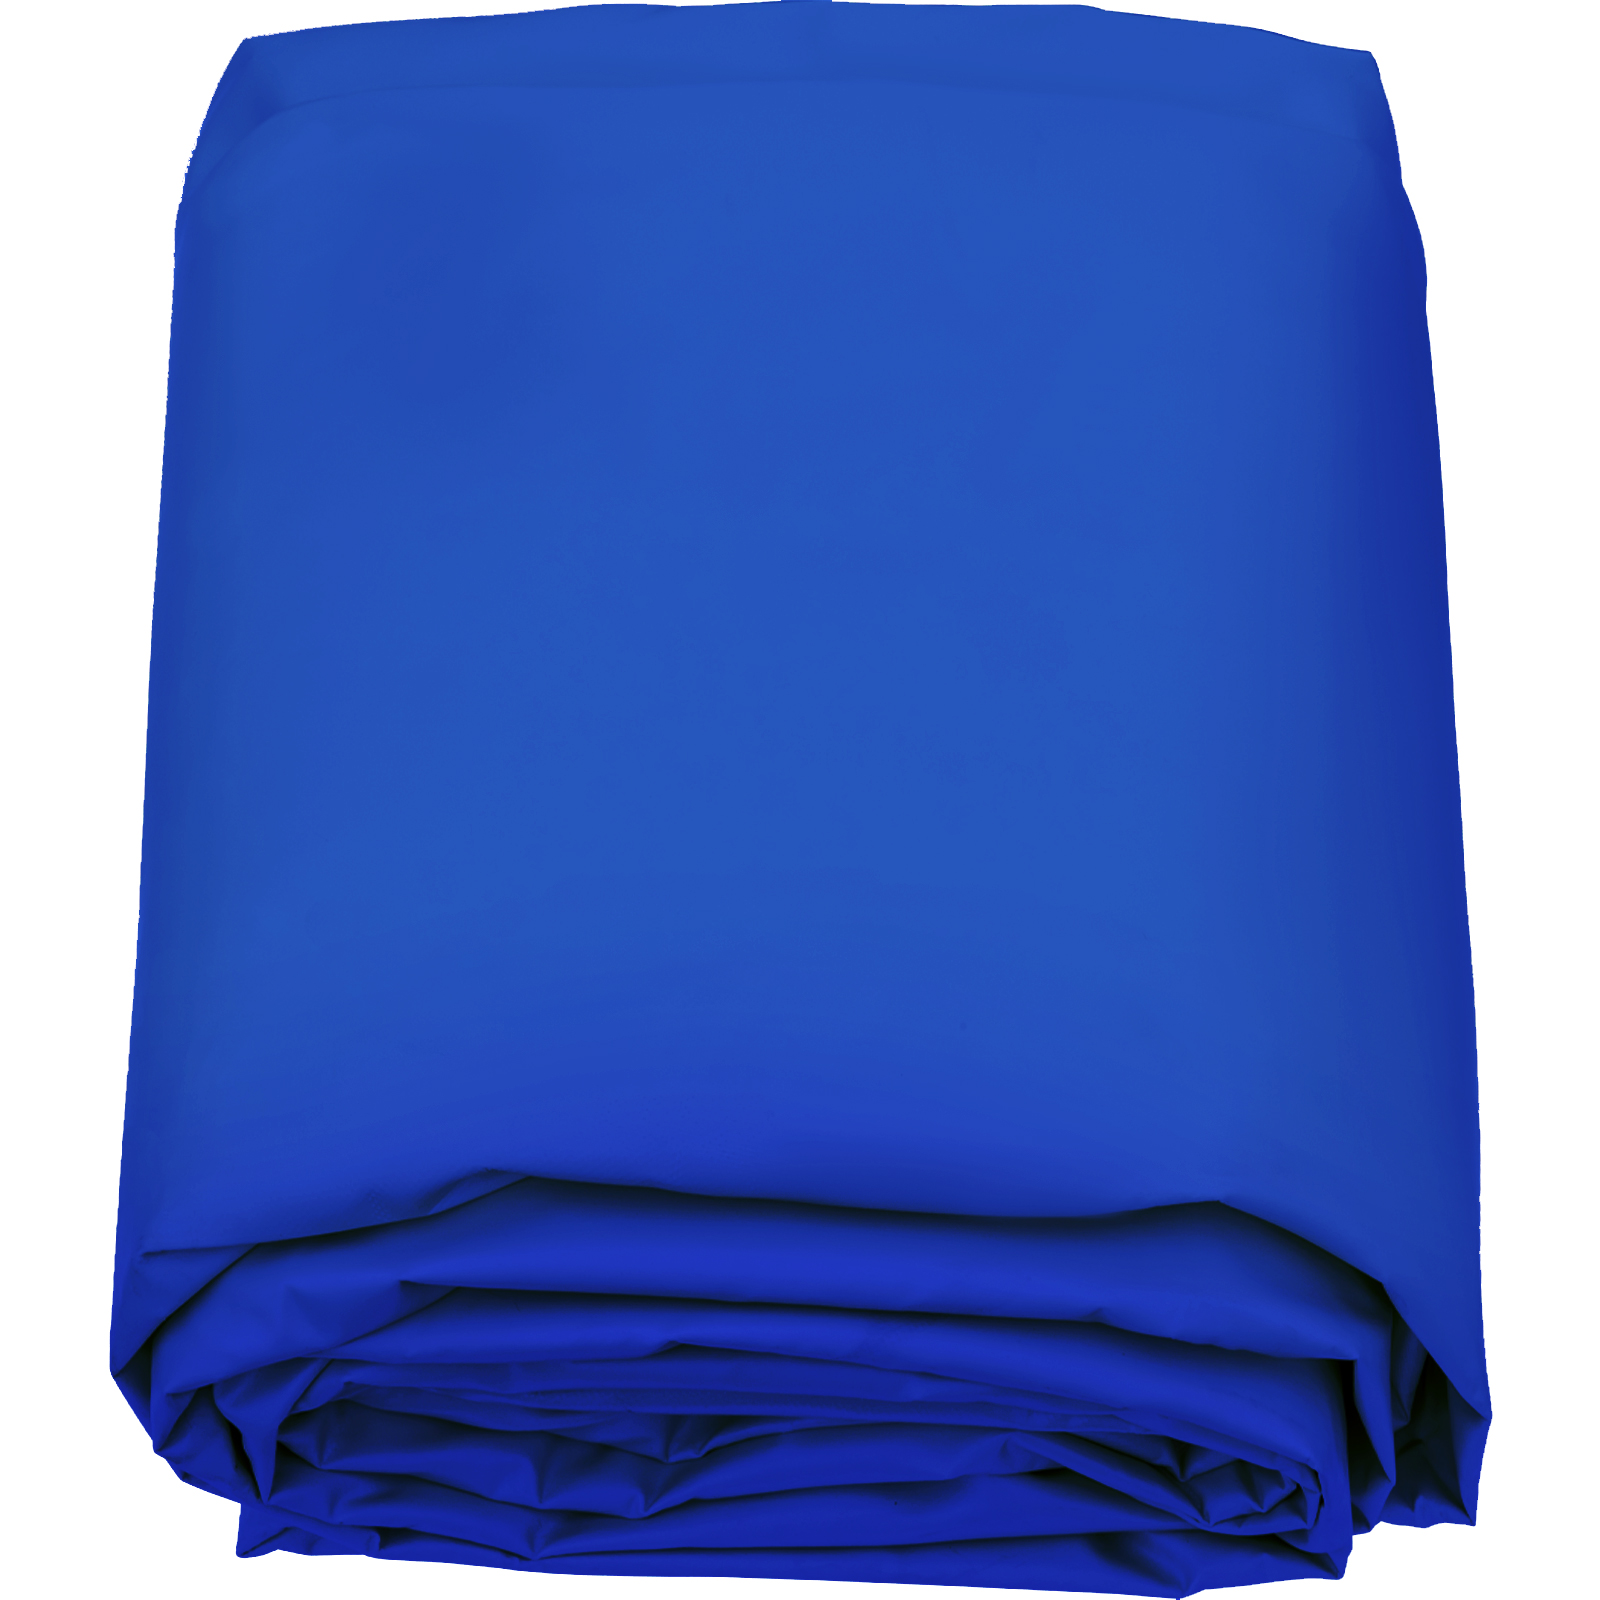 VEVOR medenceponyva kör alakú 4,5 m átmérőjű medencetakaró, kék téli ponyva kerek medenceponyva, szennyeződéstaszító ponyva medencéhez vízálló, PVC anyagú medencetakaró